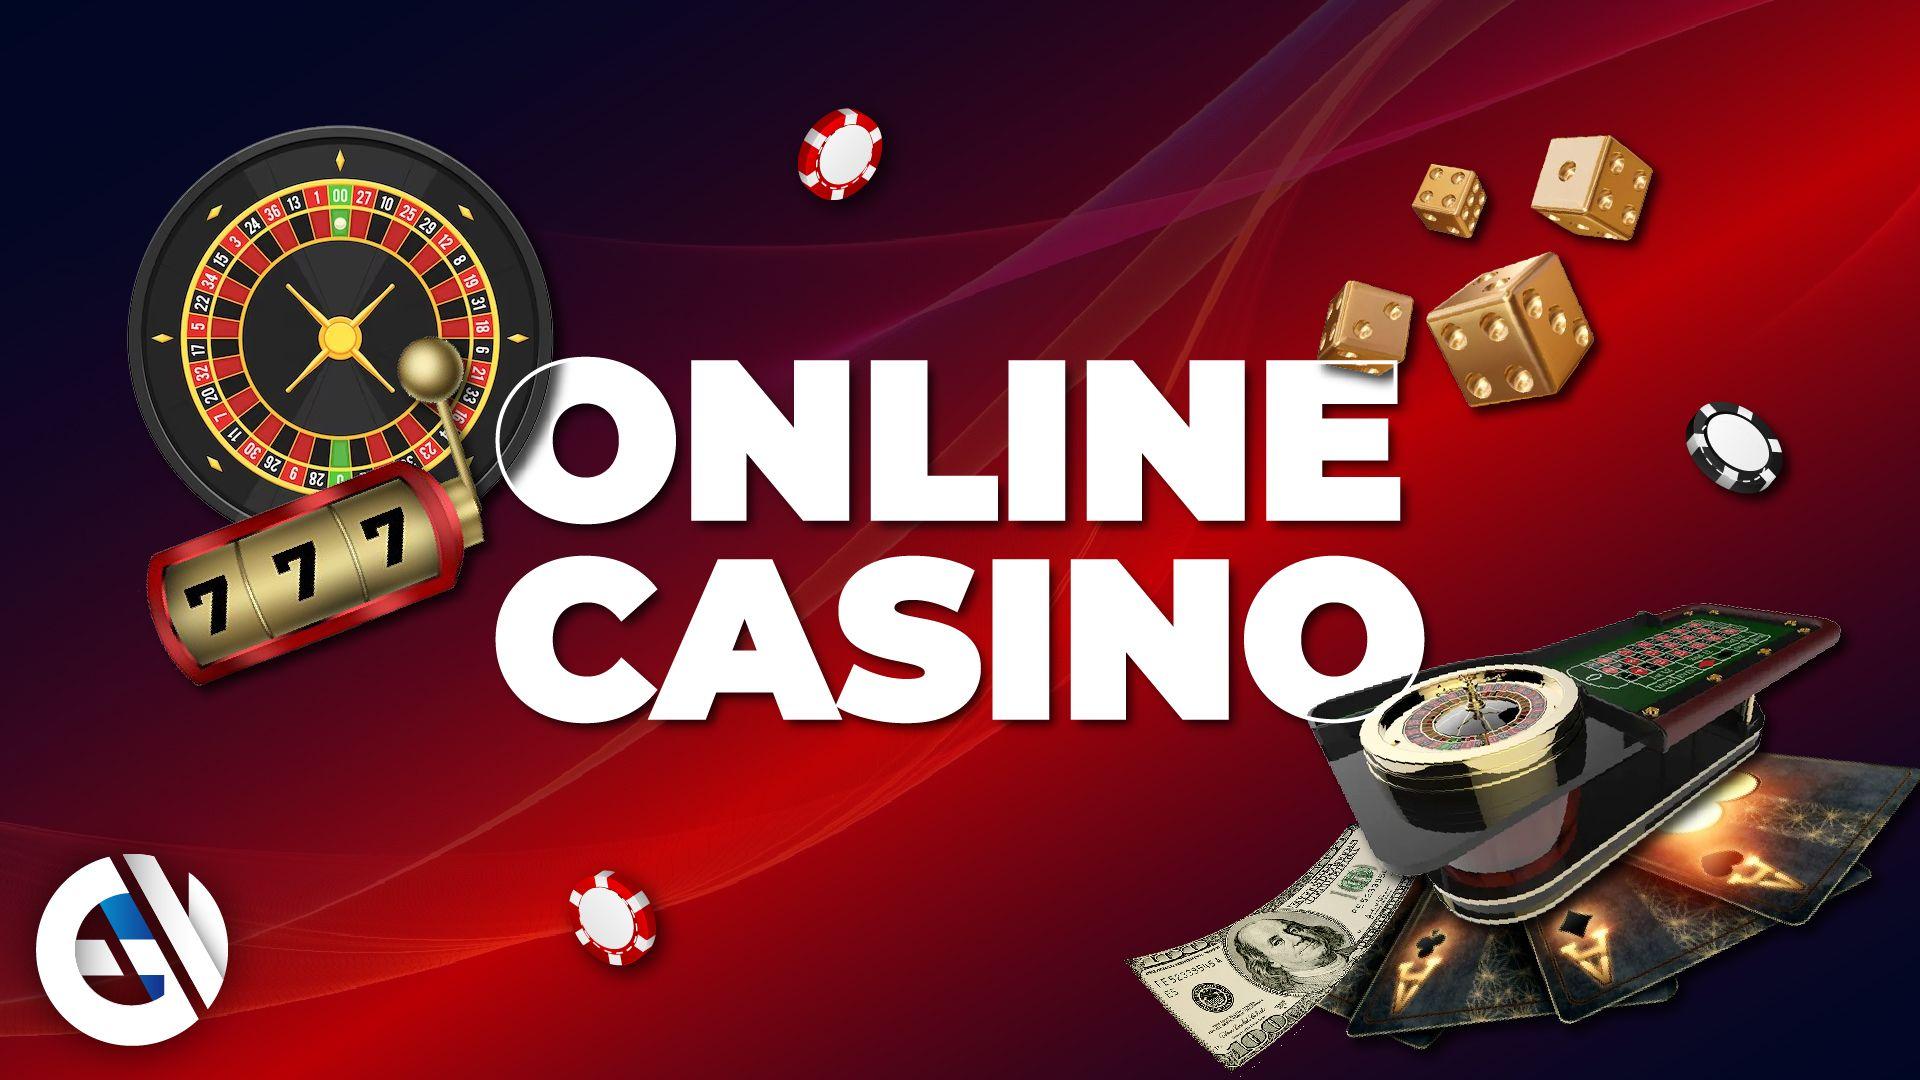 Casinos in Portugal: Entdecken Sie die besten Online-Bonusse und -Promotionen